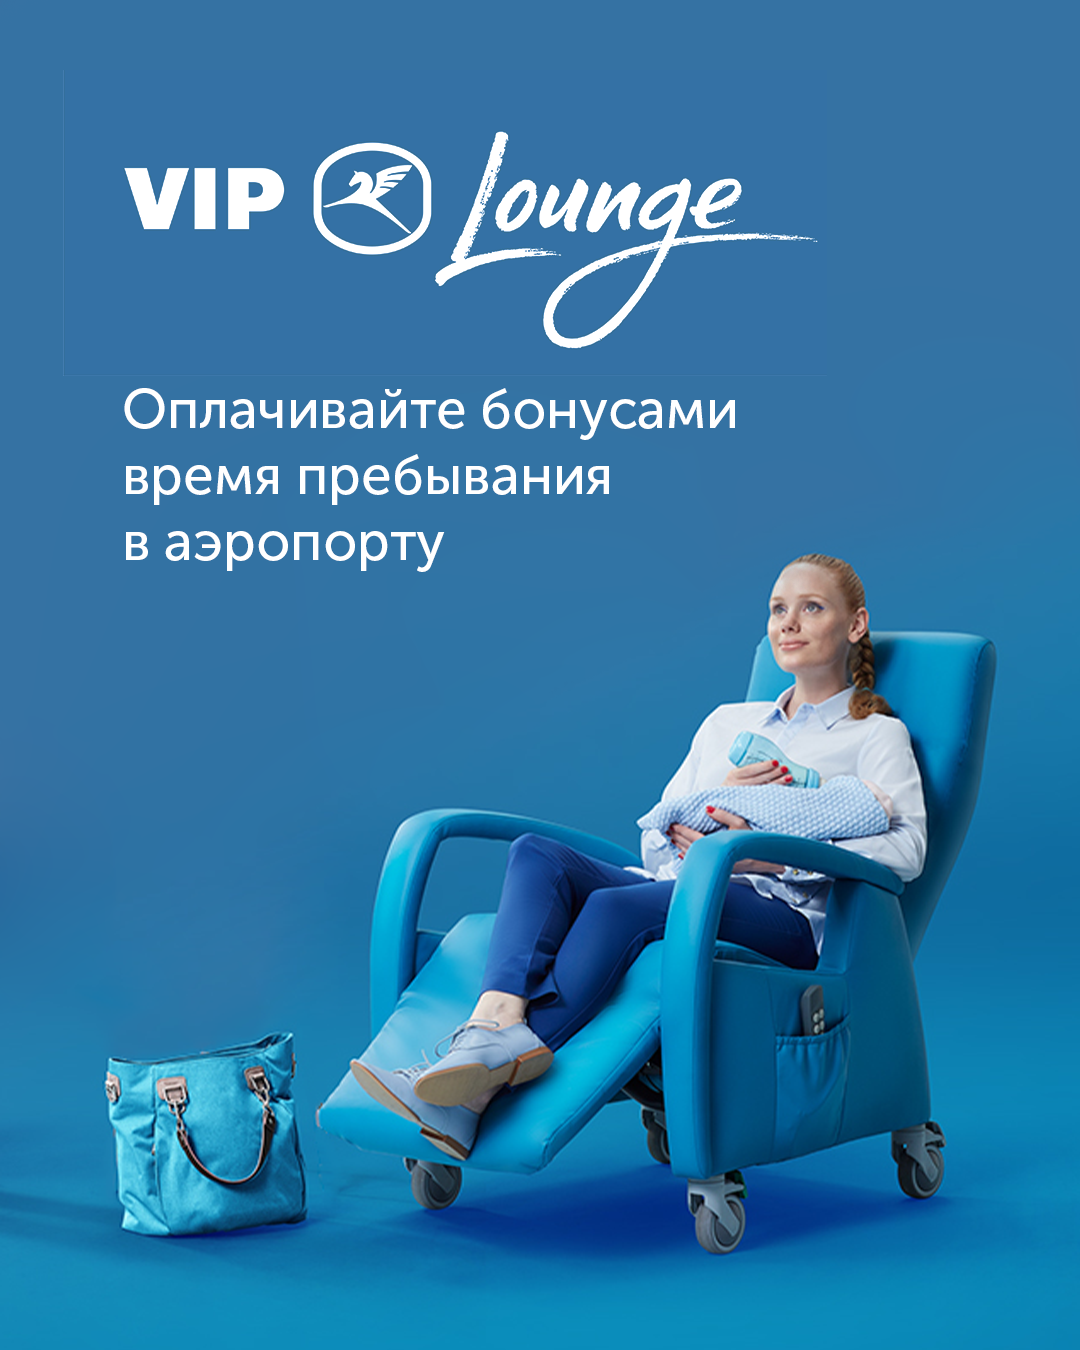 Бизнес-залы VIP Lounge Внуково